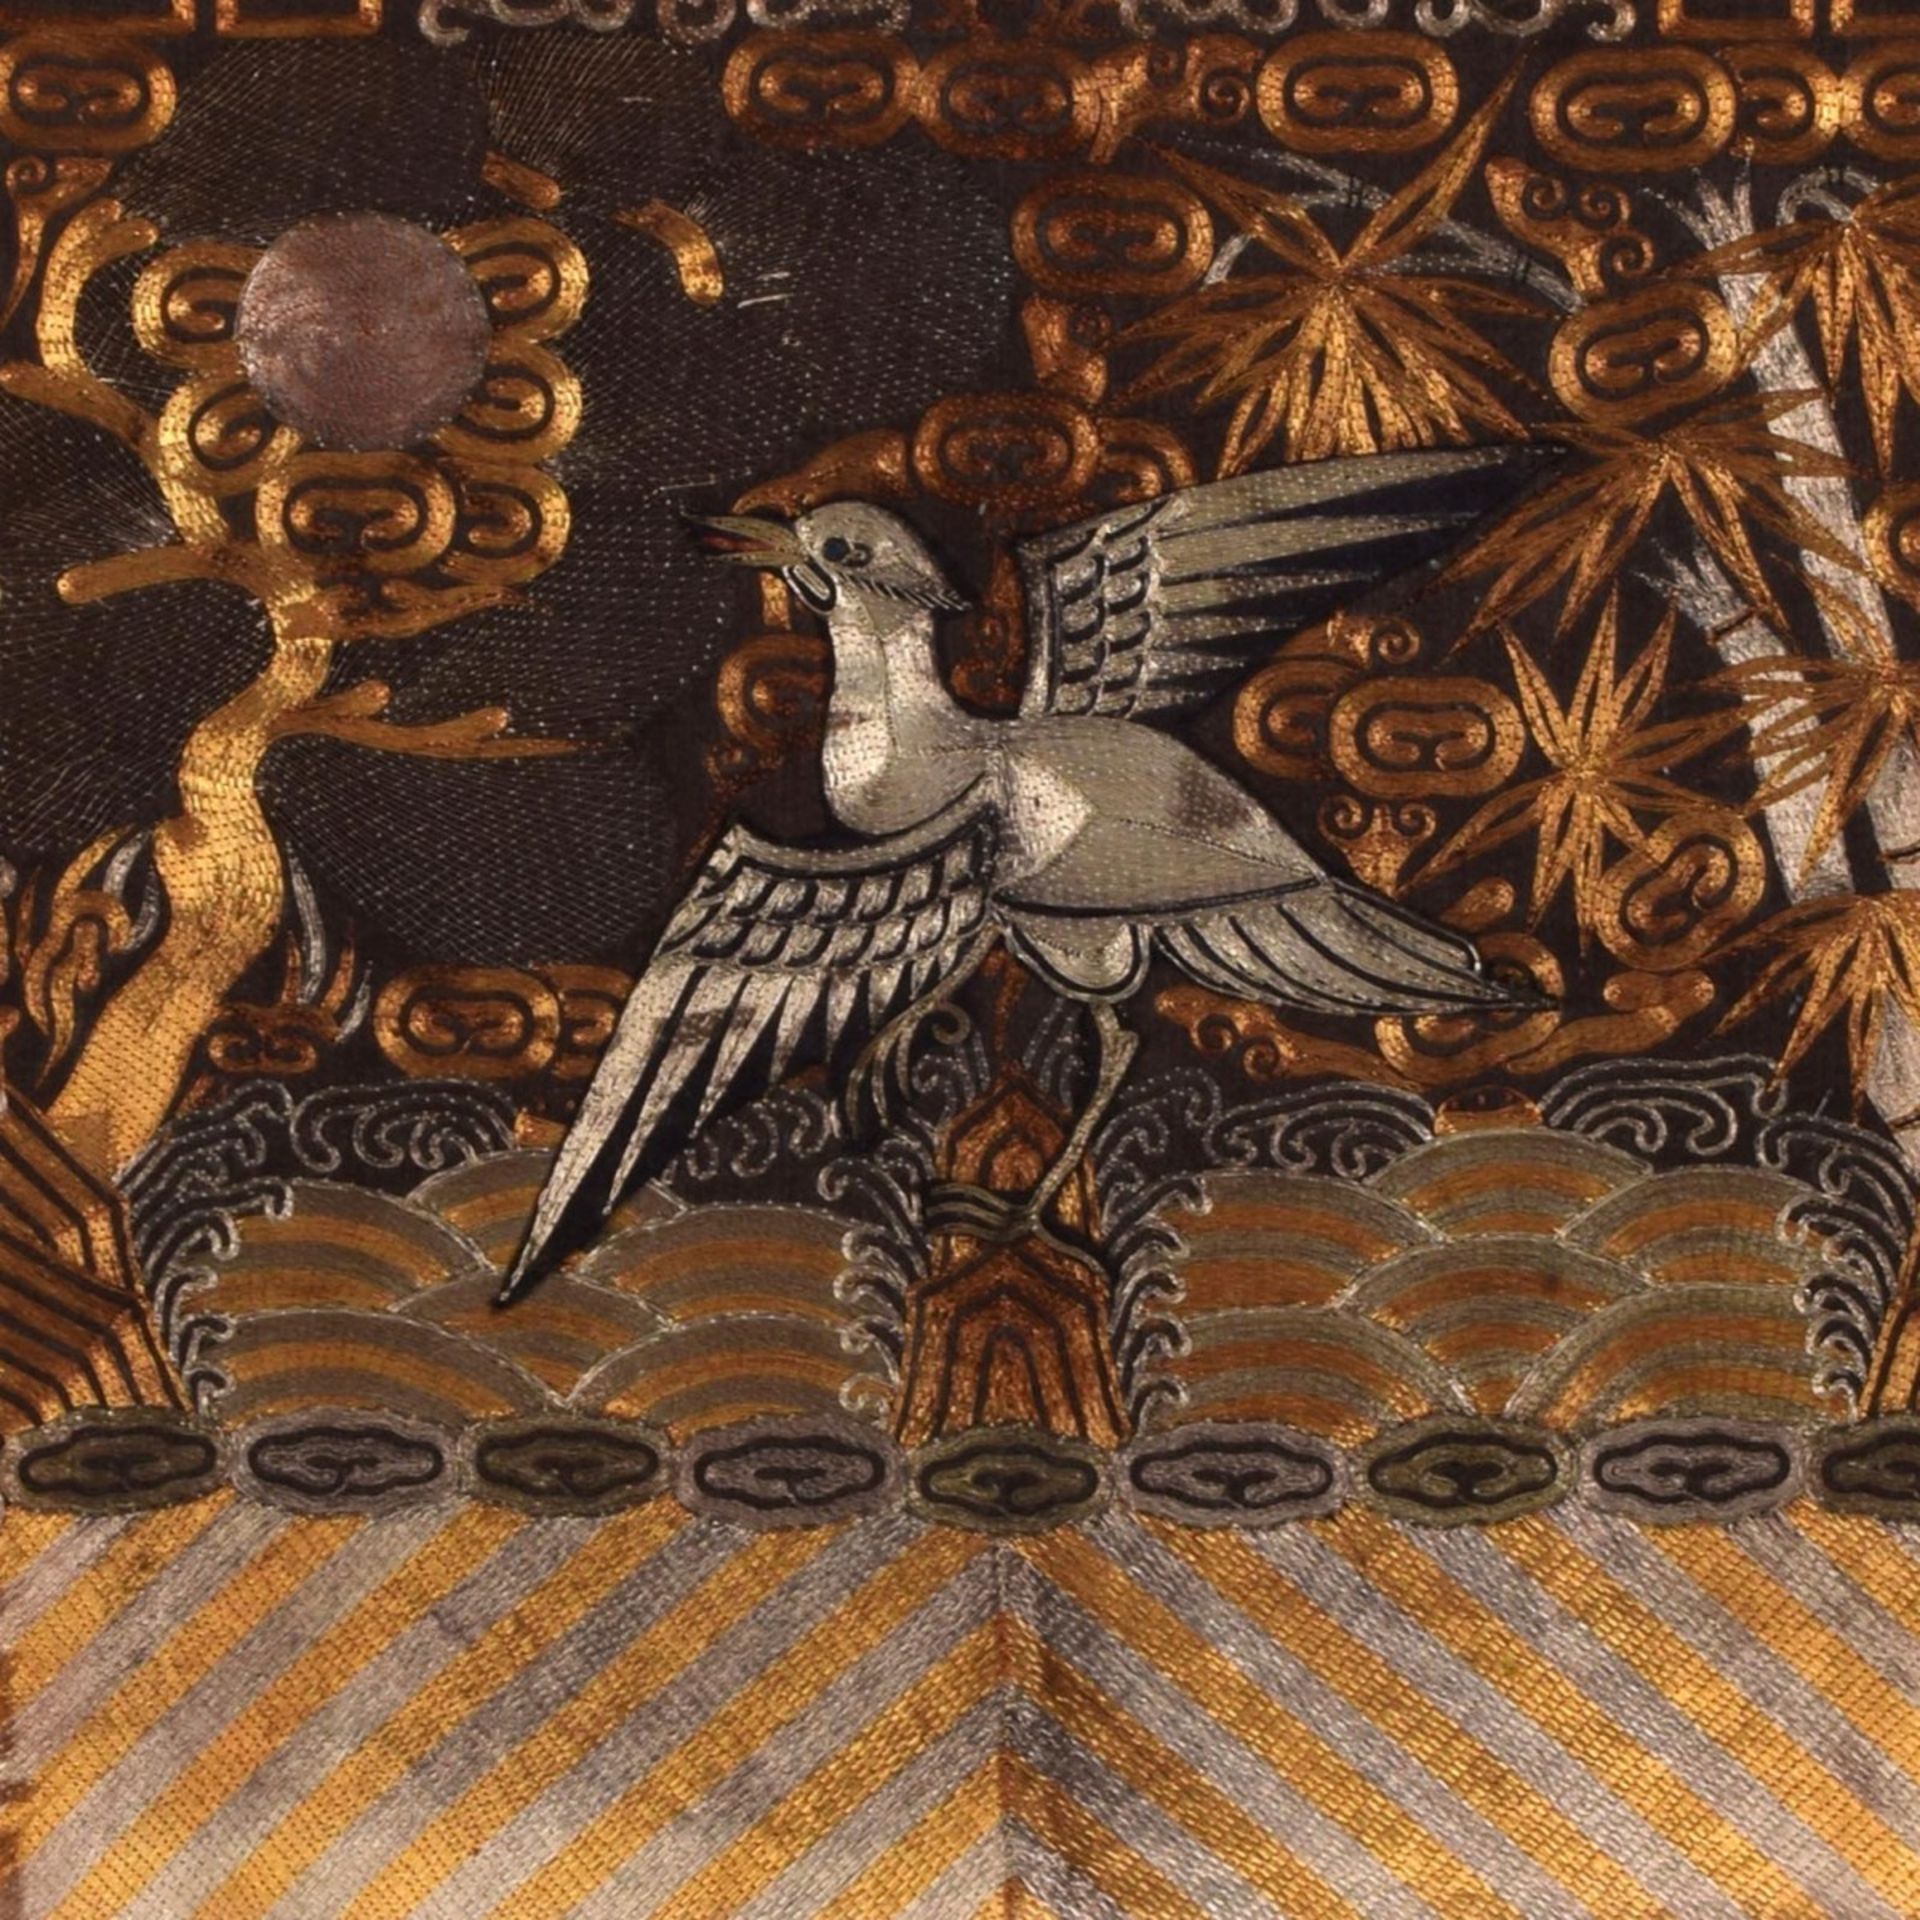 Künstlerarbeit auf Stoff Stickerei u.a. mit Gold- und Silberfäden, Darstellung eines Vogels mit a